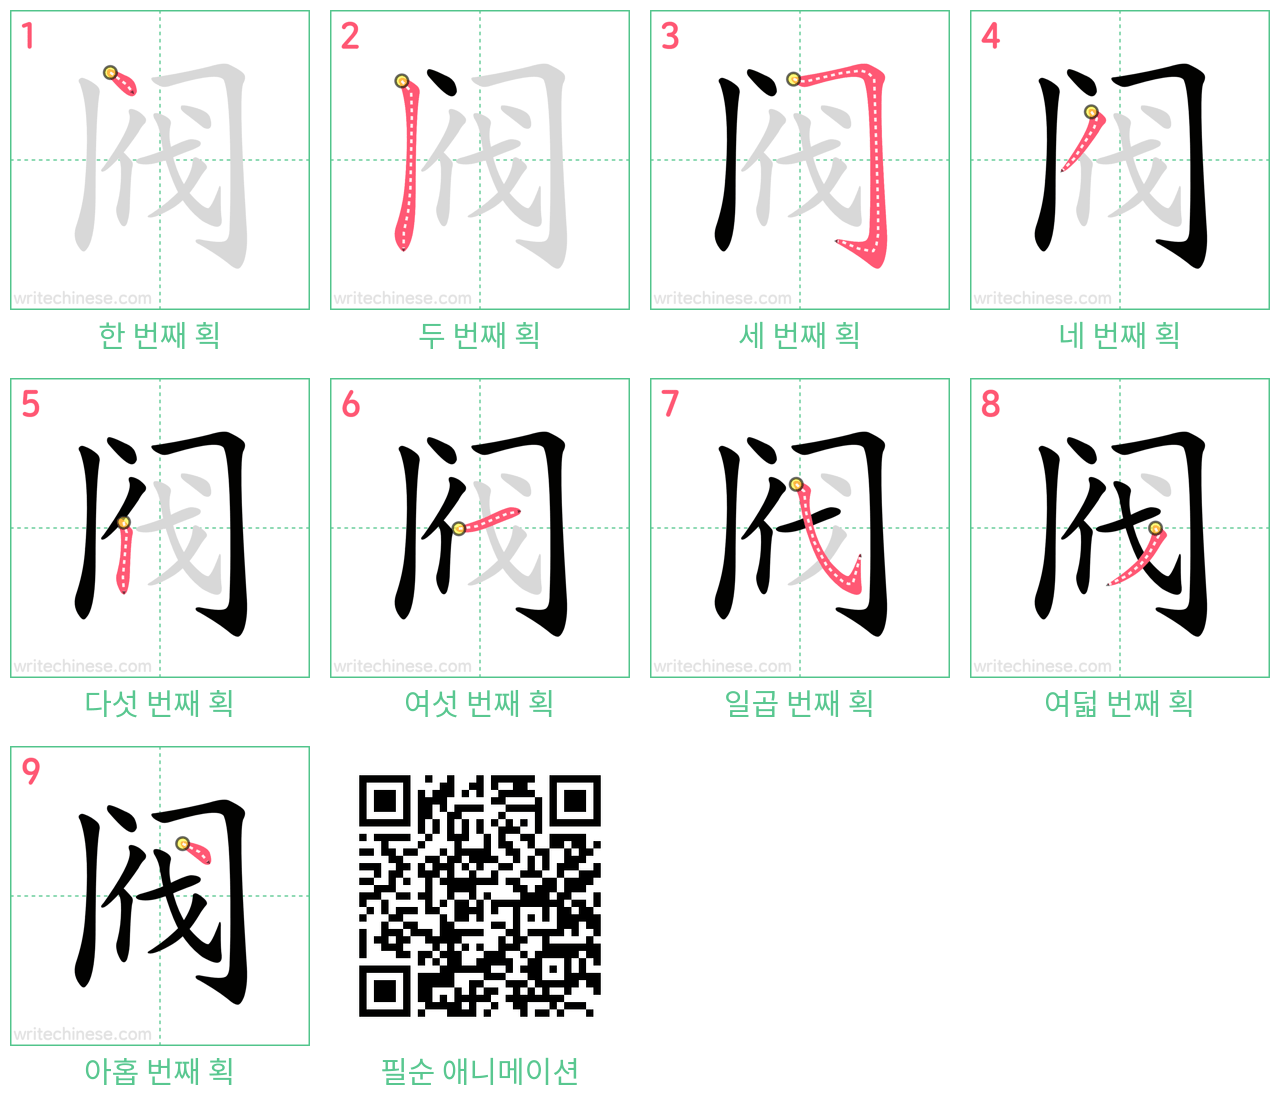 阀 step-by-step stroke order diagrams